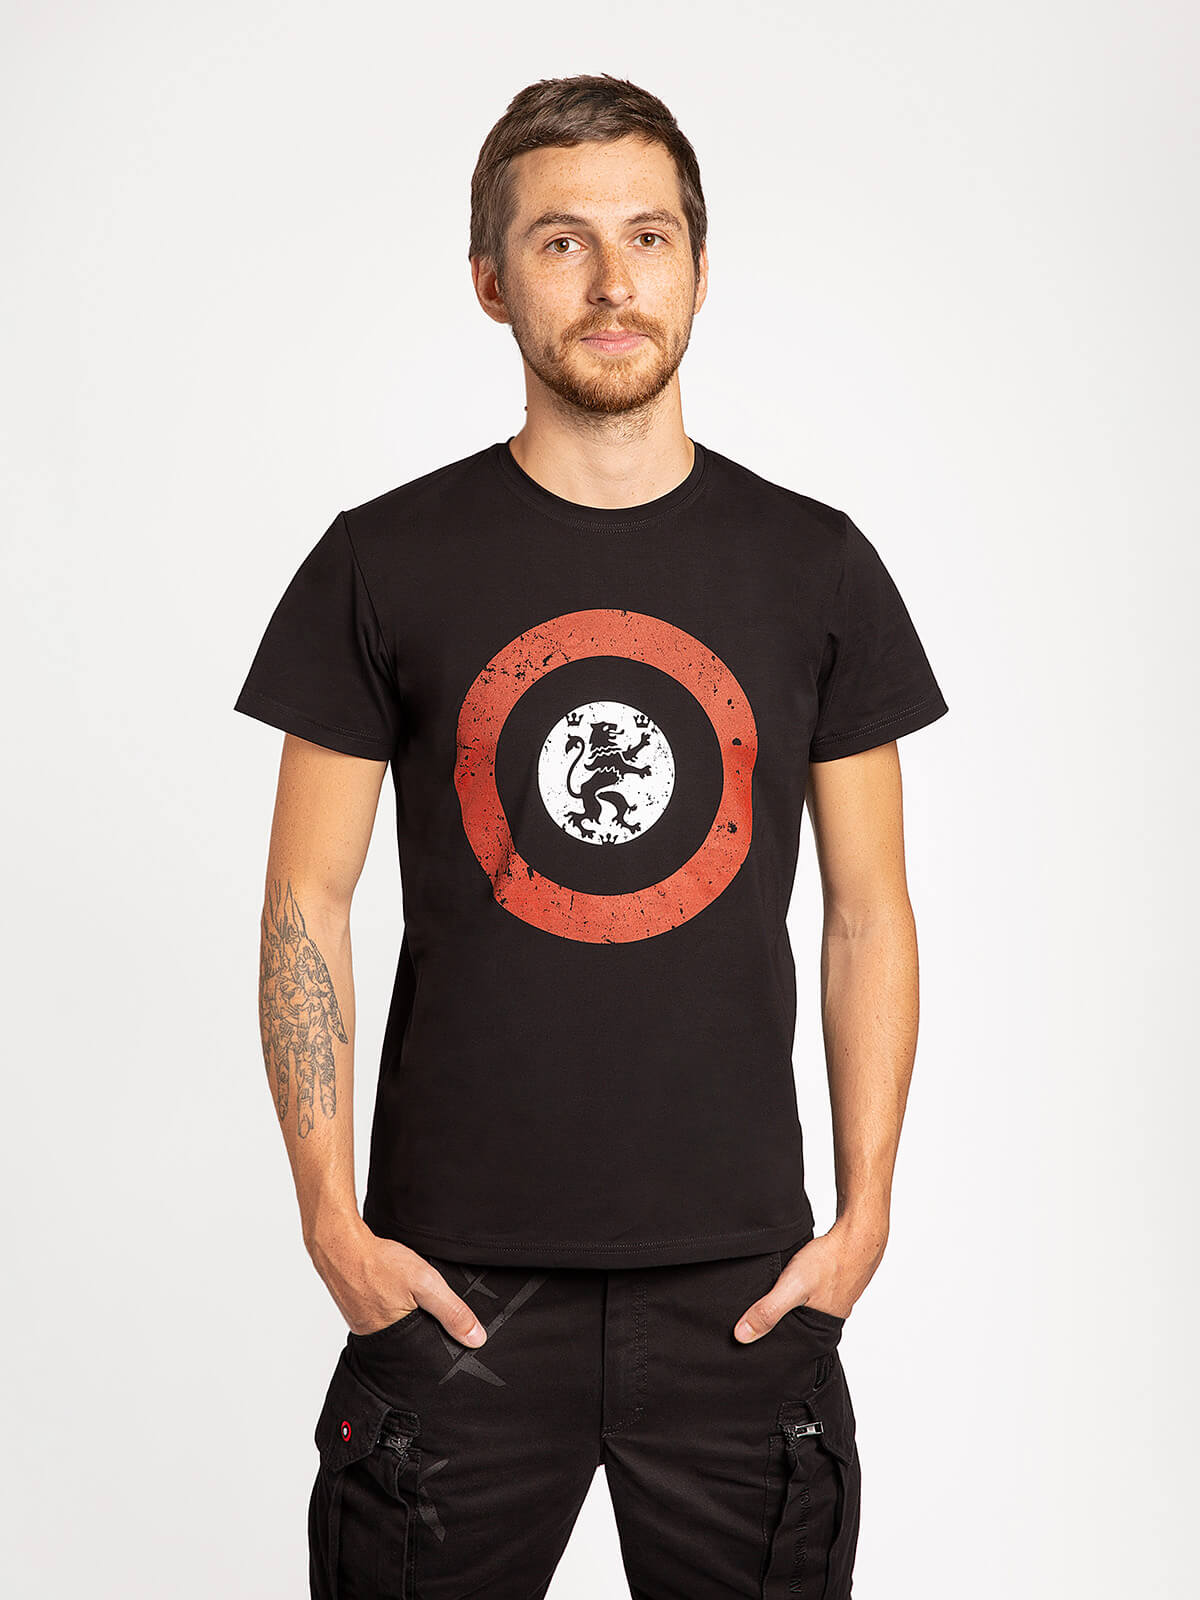 Men's T-Shirt Lion (Roundel). Color black. Material: 95% cotton, 5% spandex.